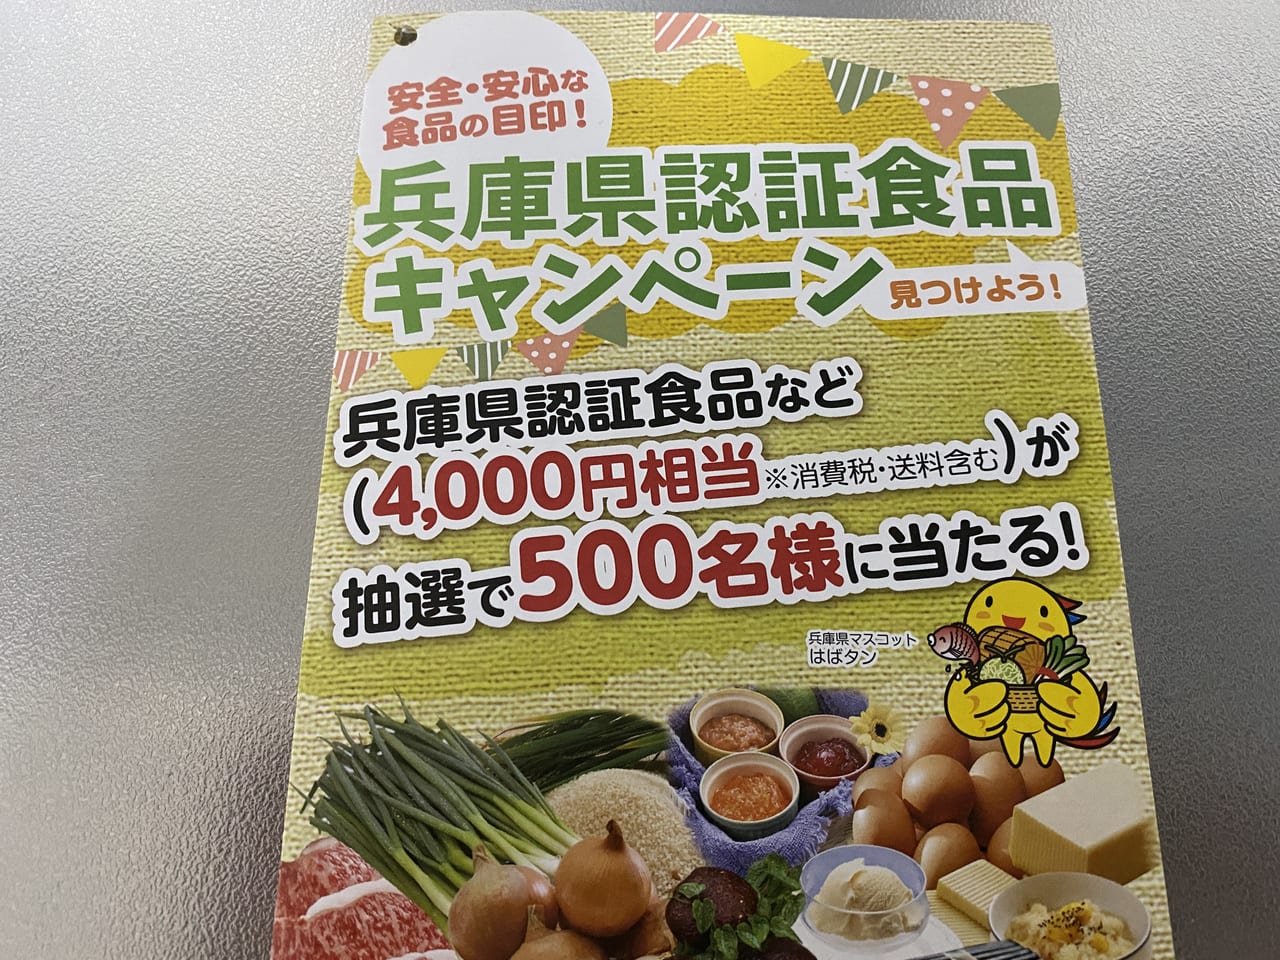 兵庫県認証食品キャンペーン